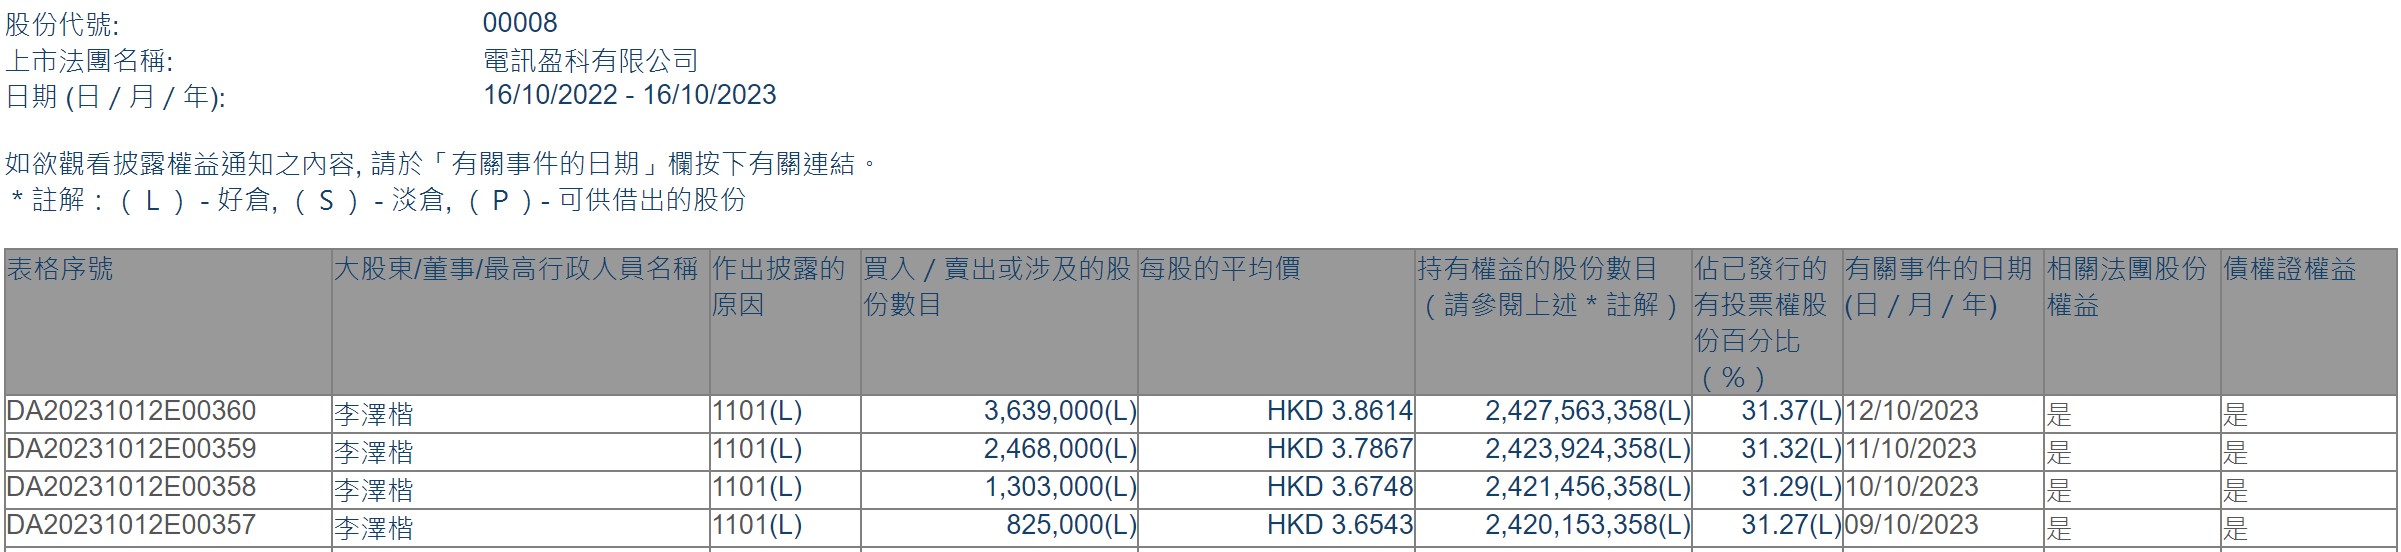 李泽楷连续四日增持电讯盈科(00008)合计823.5万股 持股比例上升至31.37%